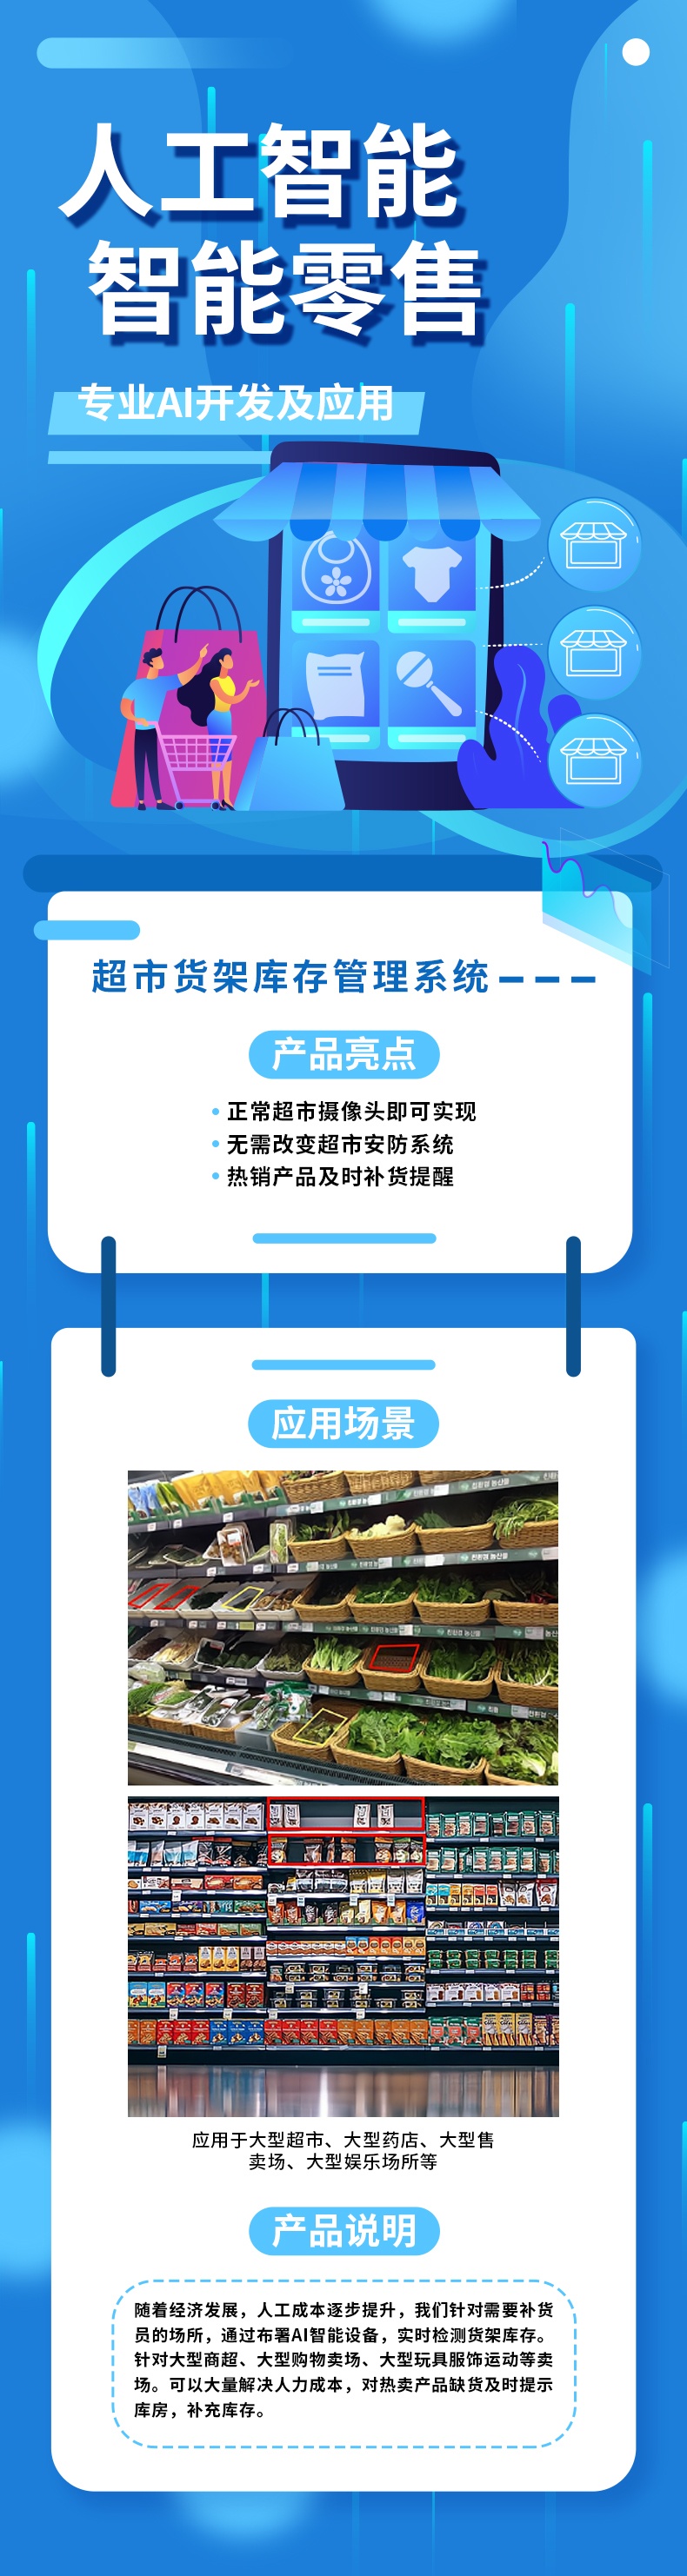 超市货架库存管理系统_看图王.jpg